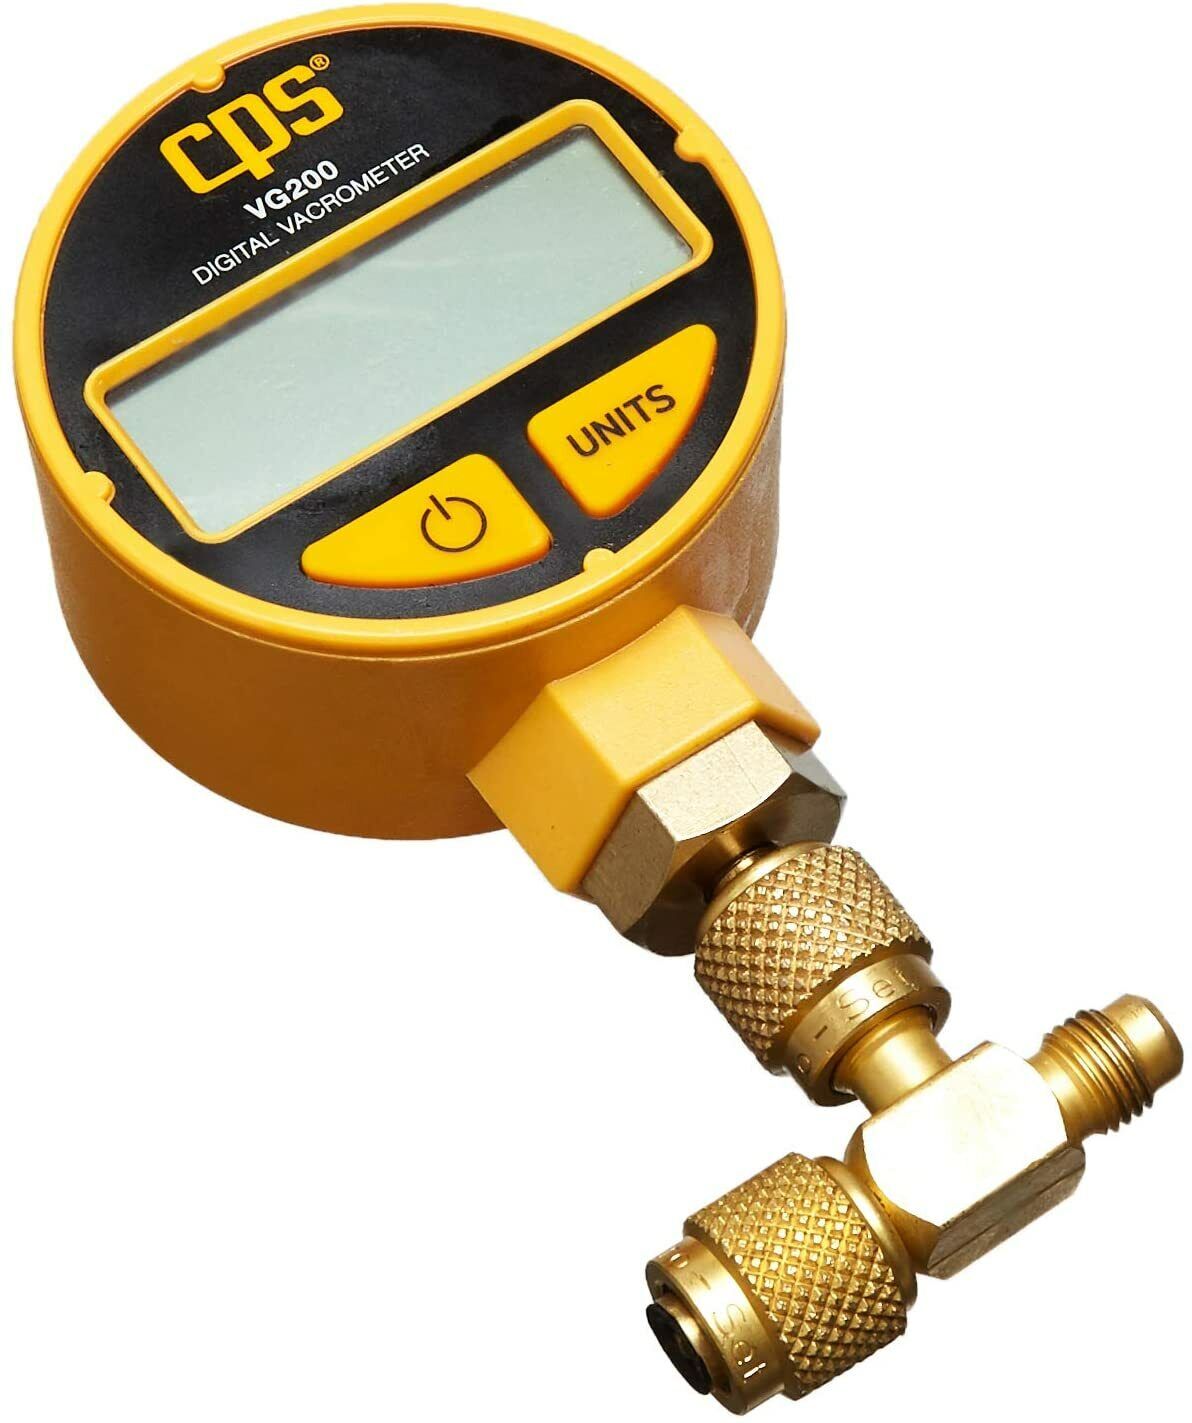 CPS Products VG200 Digital Vacuum Gauge, Measures in Microns